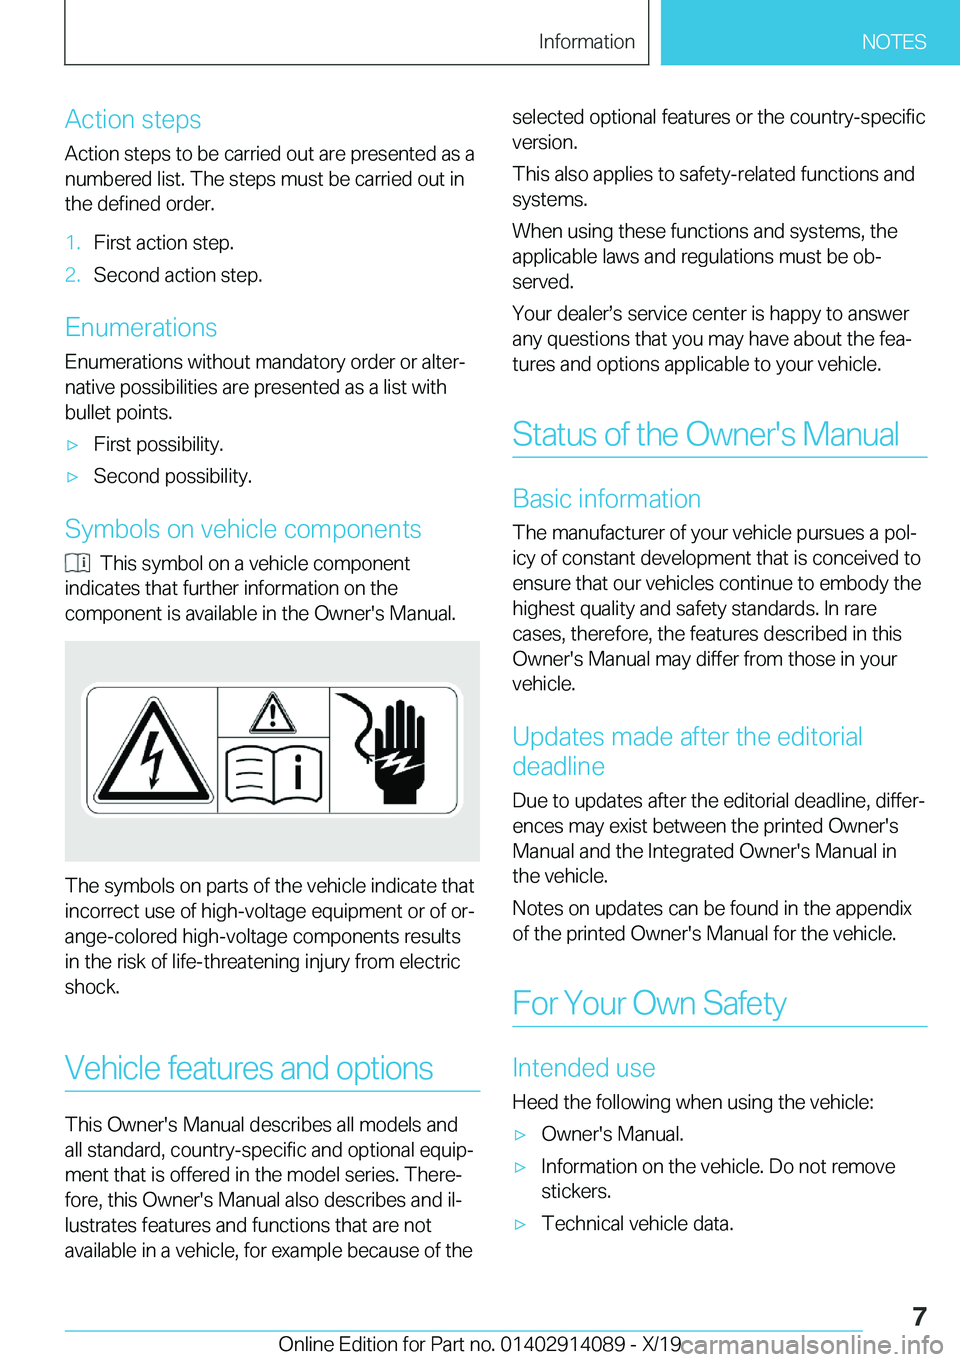 BMW I8 2020  Owners Manual �A�c�t�i�o�n��s�t�e�p�s
�A�c�t�i�o�n��s�t�e�p�s��t�o��b�e��c�a�r�r�i�e�d��o�u�t��a�r�e��p�r�e�s�e�n�t�e�d��a�s��a
�n�u�m�b�e�r�e�d��l�i�s�t�.��T�h�e��s�t�e�p�s��m�u�s�t��b�e��c�a�r�r�i